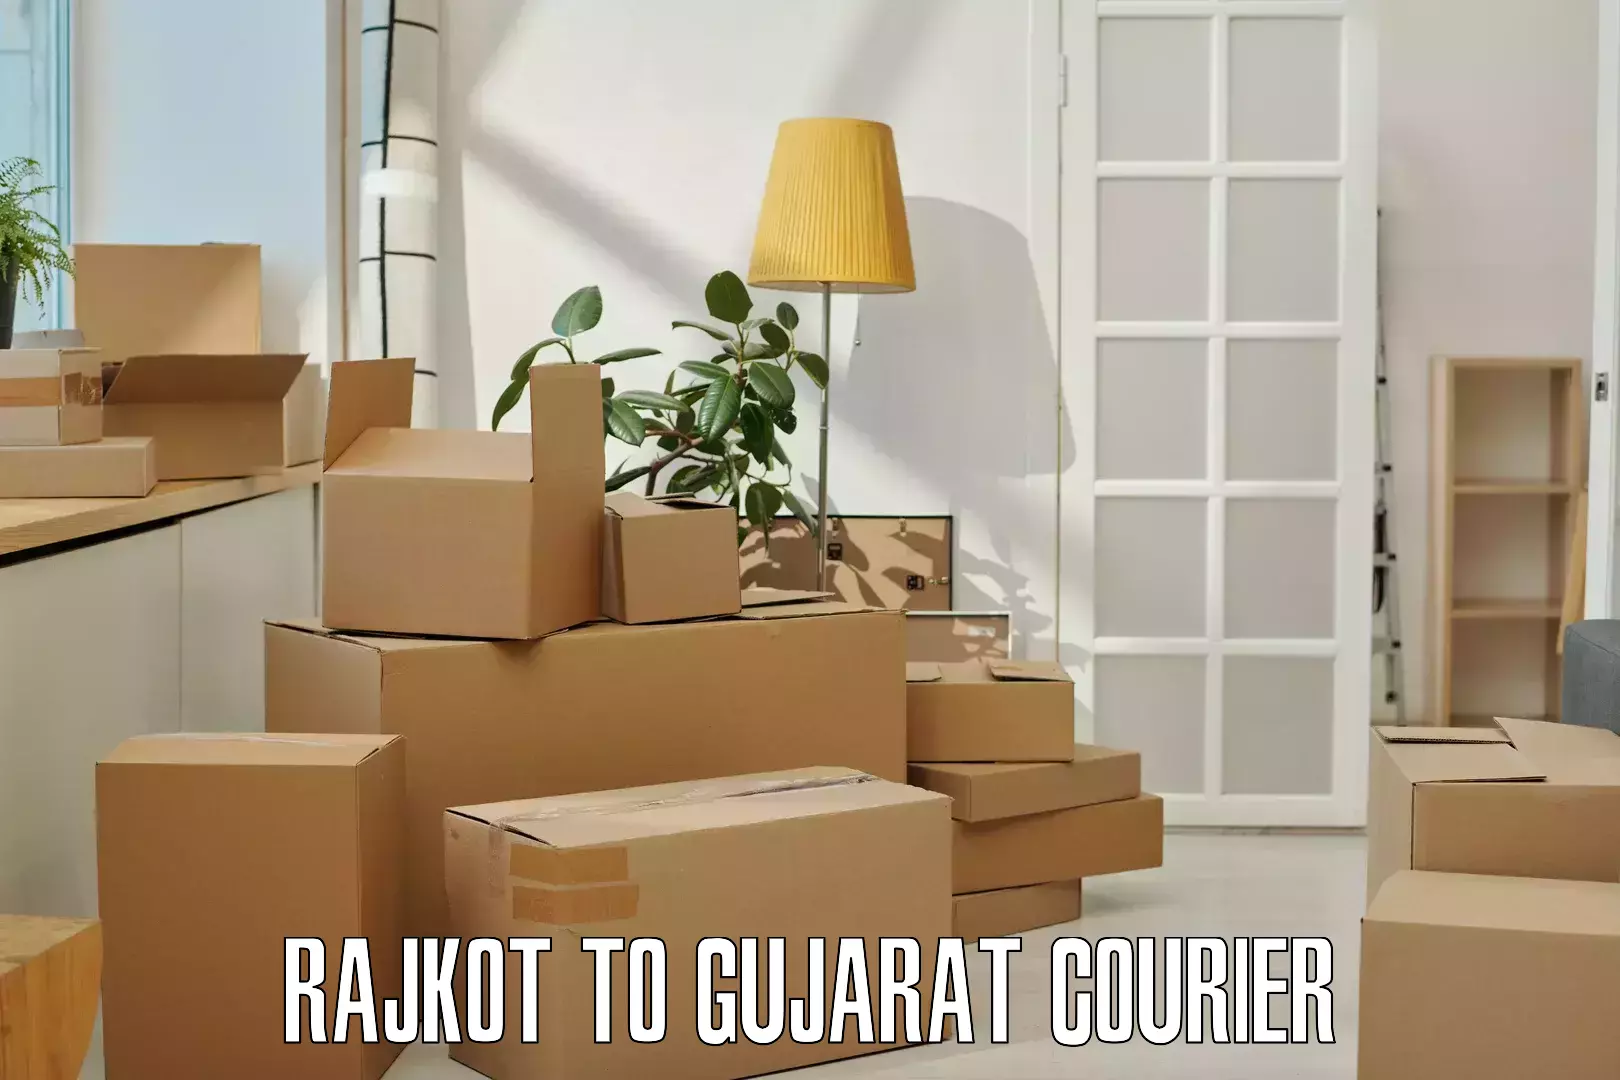 Shipping and handling Rajkot to Patan